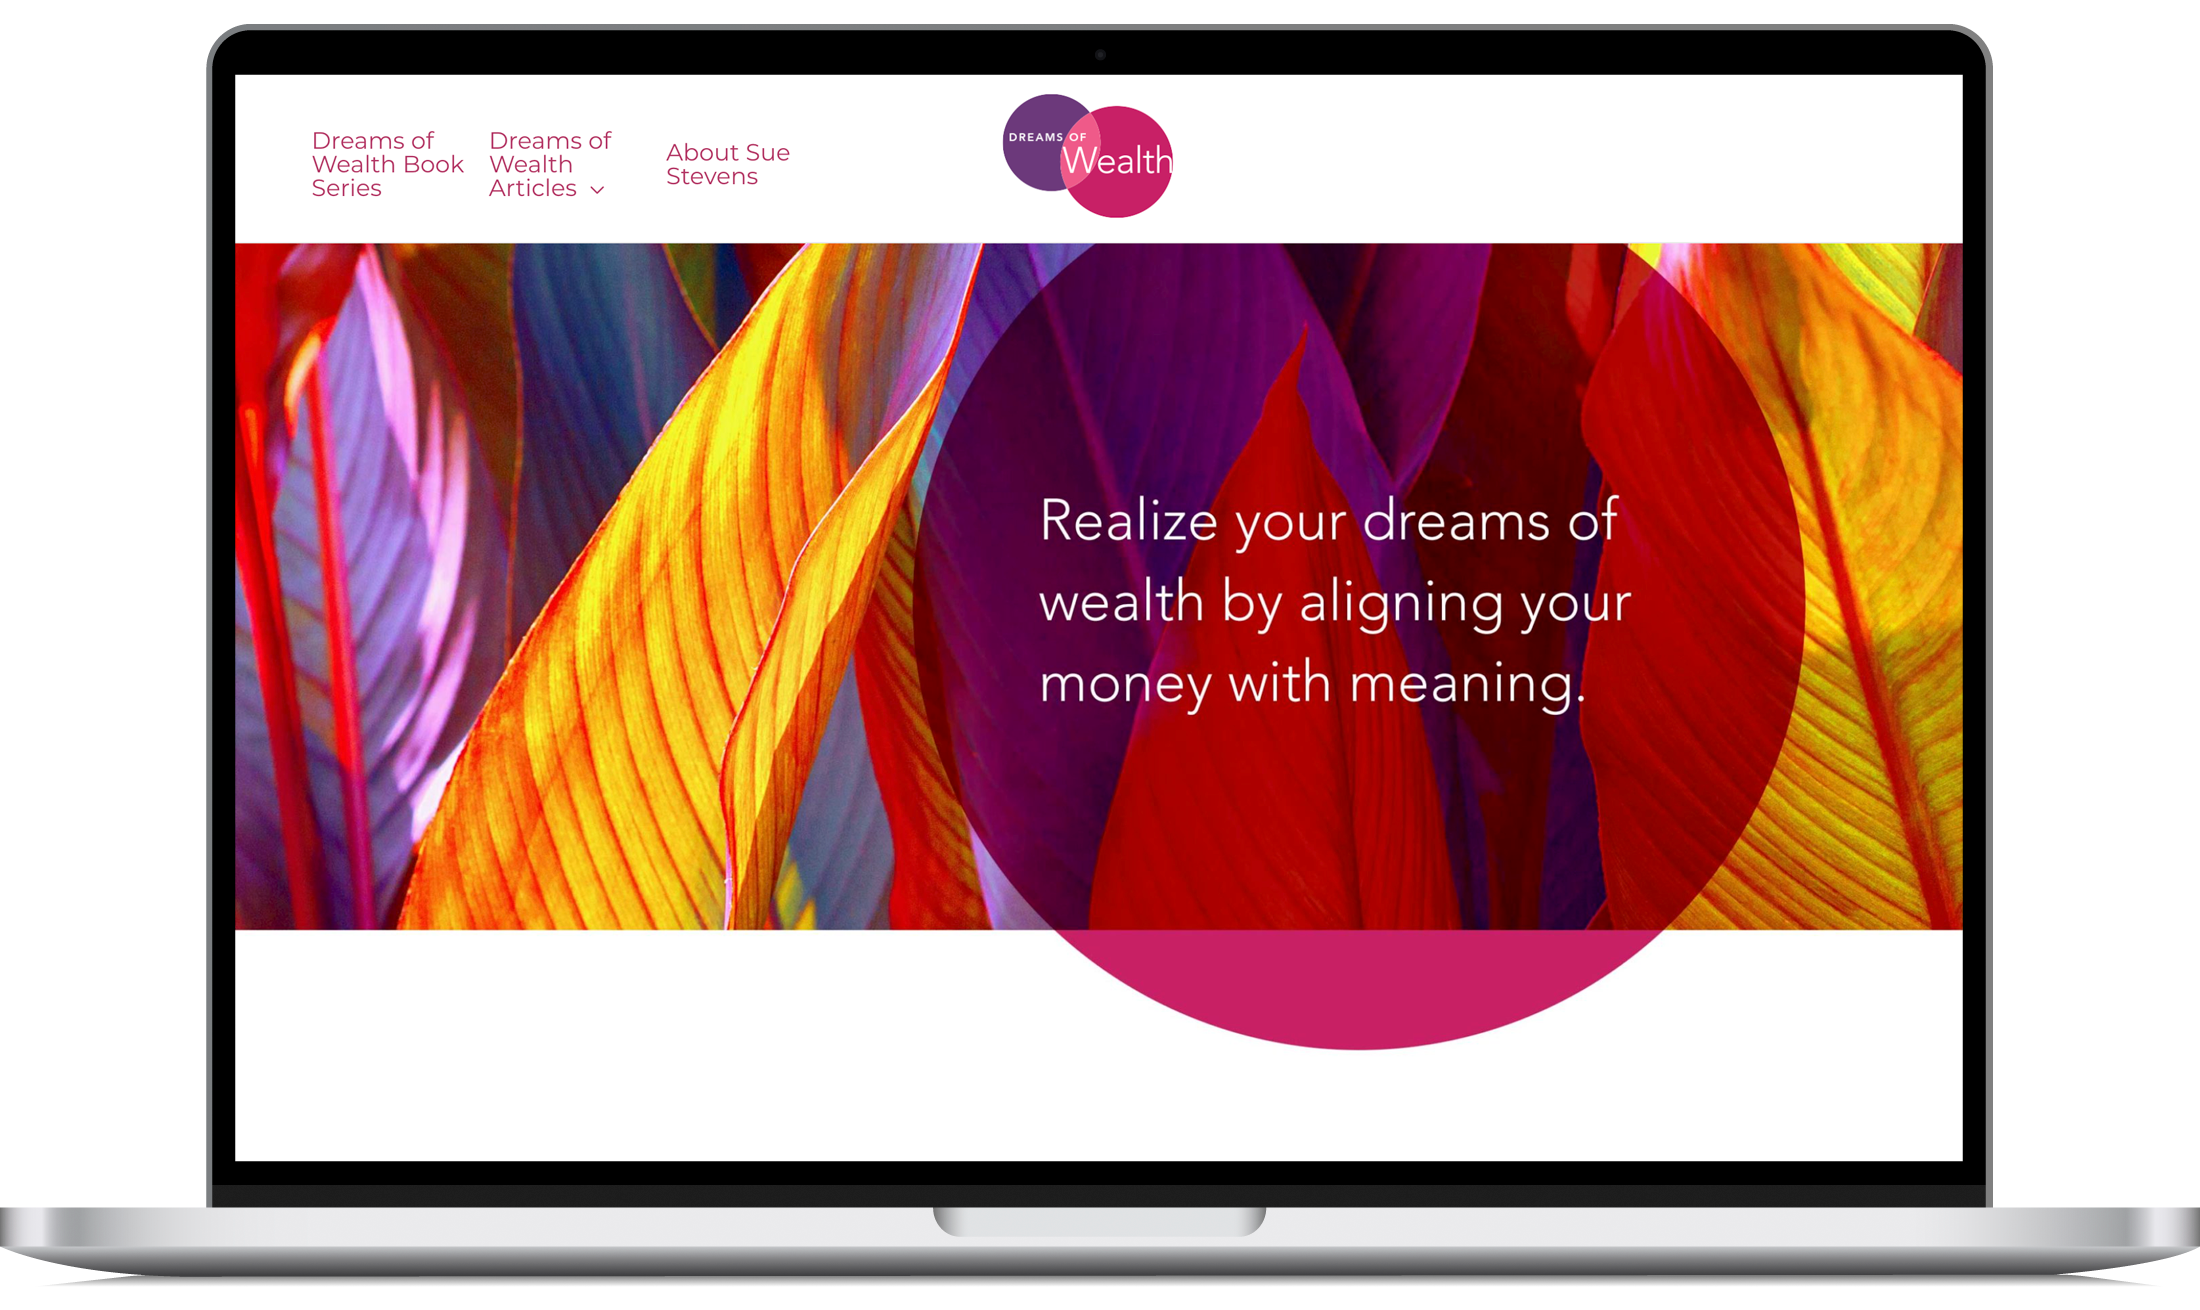 Dreams of Wealth Web Site